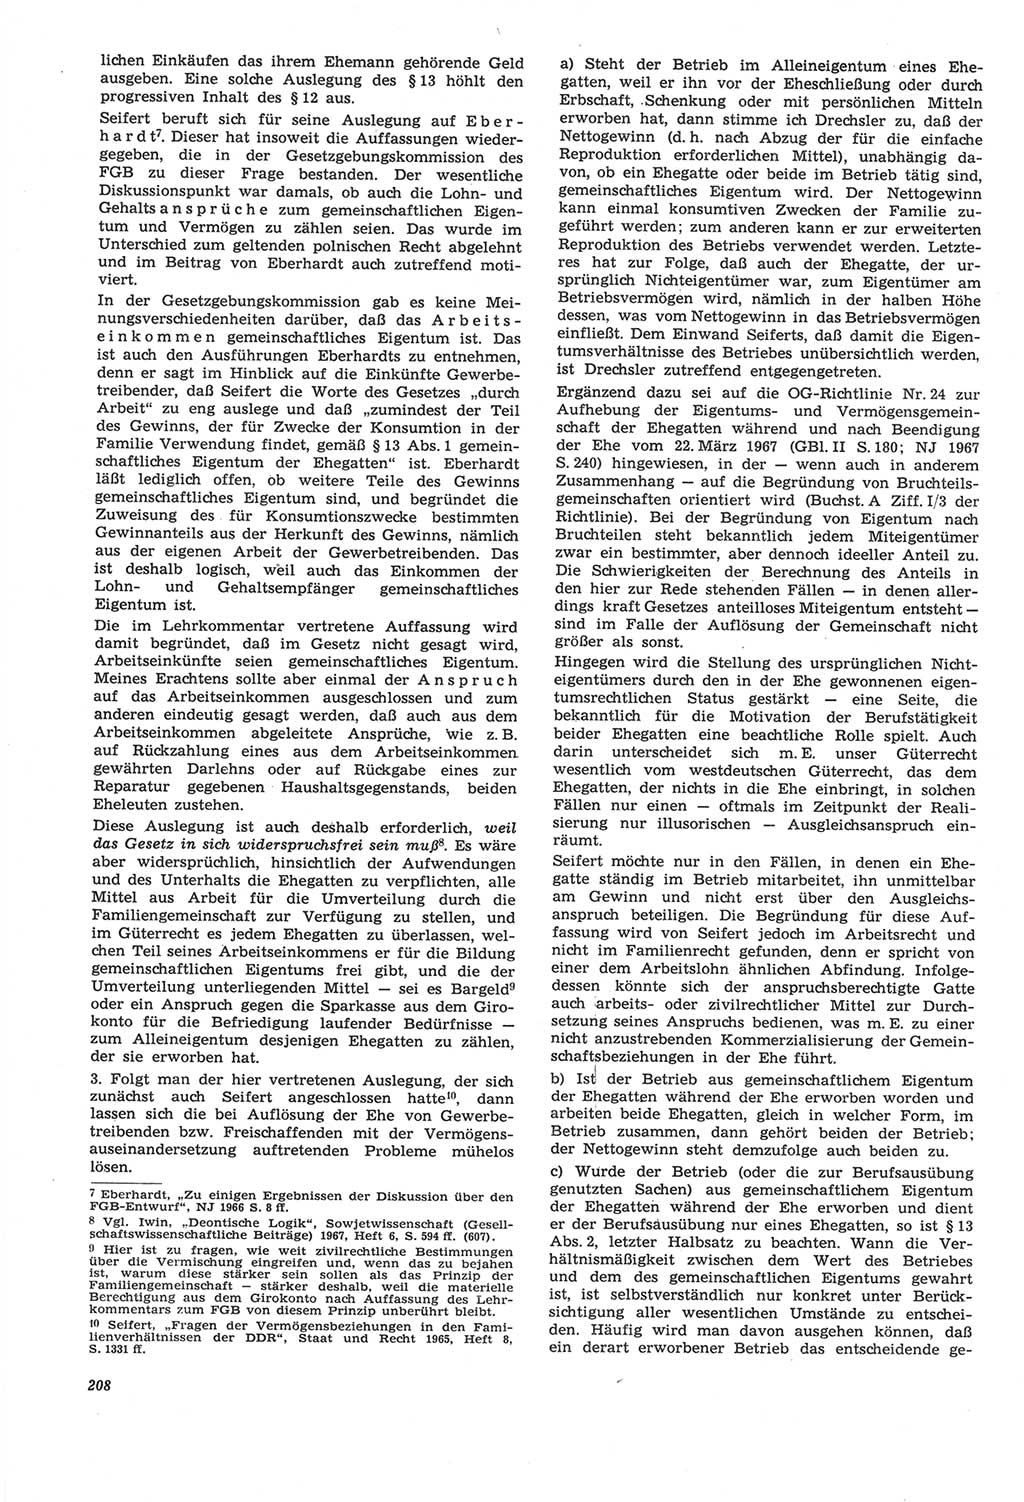 Neue Justiz (NJ), Zeitschrift für Recht und Rechtswissenschaft [Deutsche Demokratische Republik (DDR)], 22. Jahrgang 1968, Seite 208 (NJ DDR 1968, S. 208)